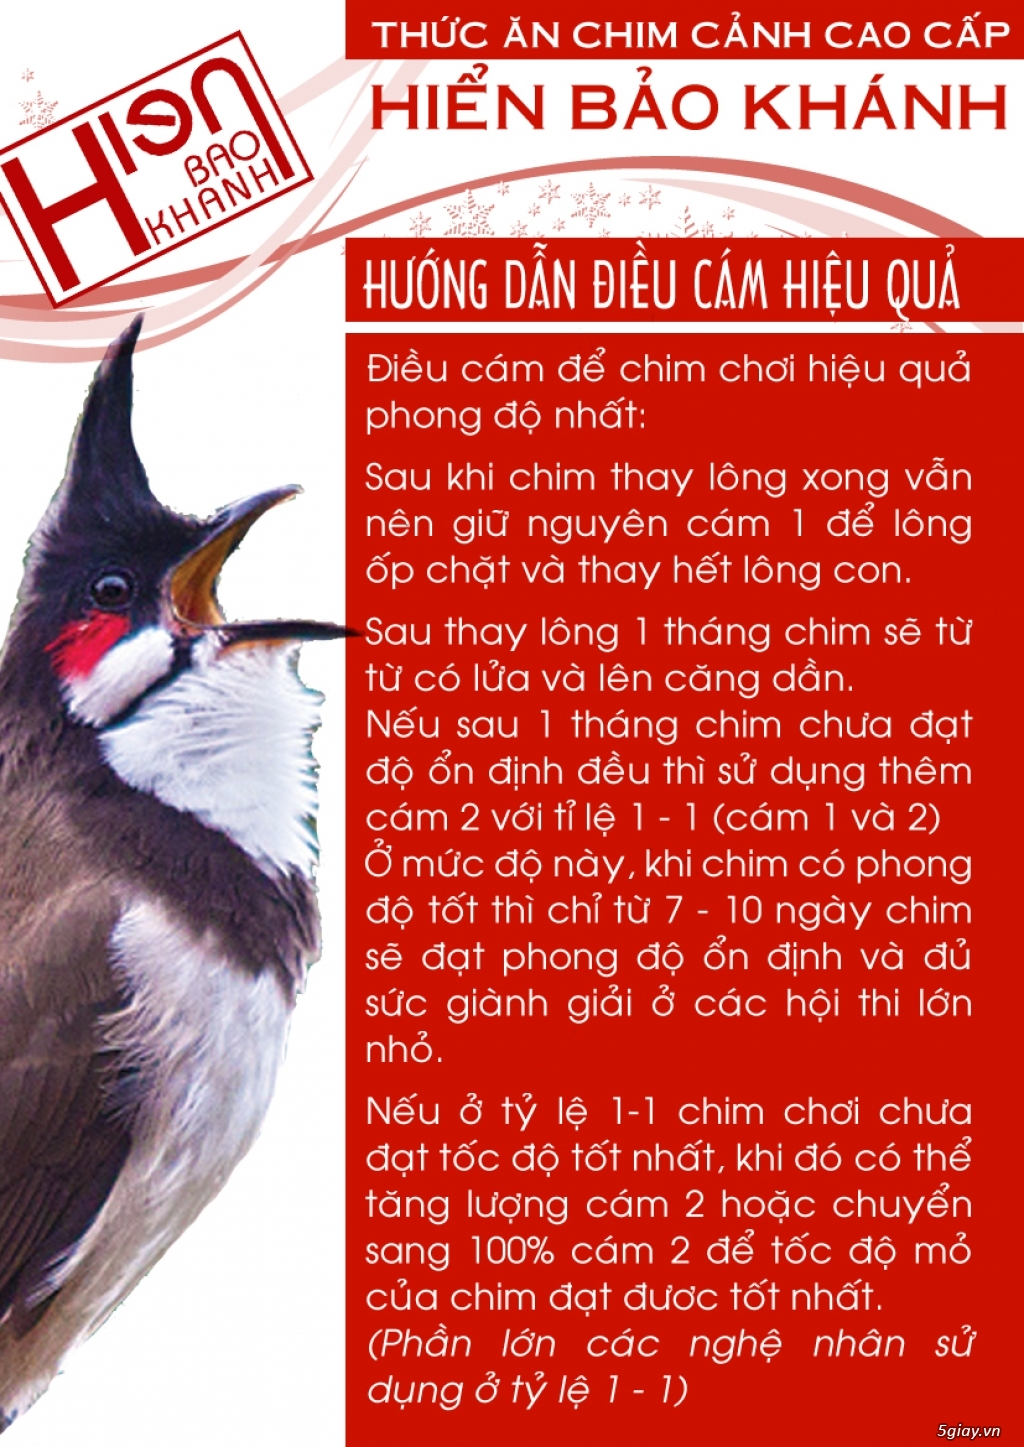 Cám chim Hiển Bảo Khánh : Phân phối nhận làm đại lý với giá hấp dẫn - 1